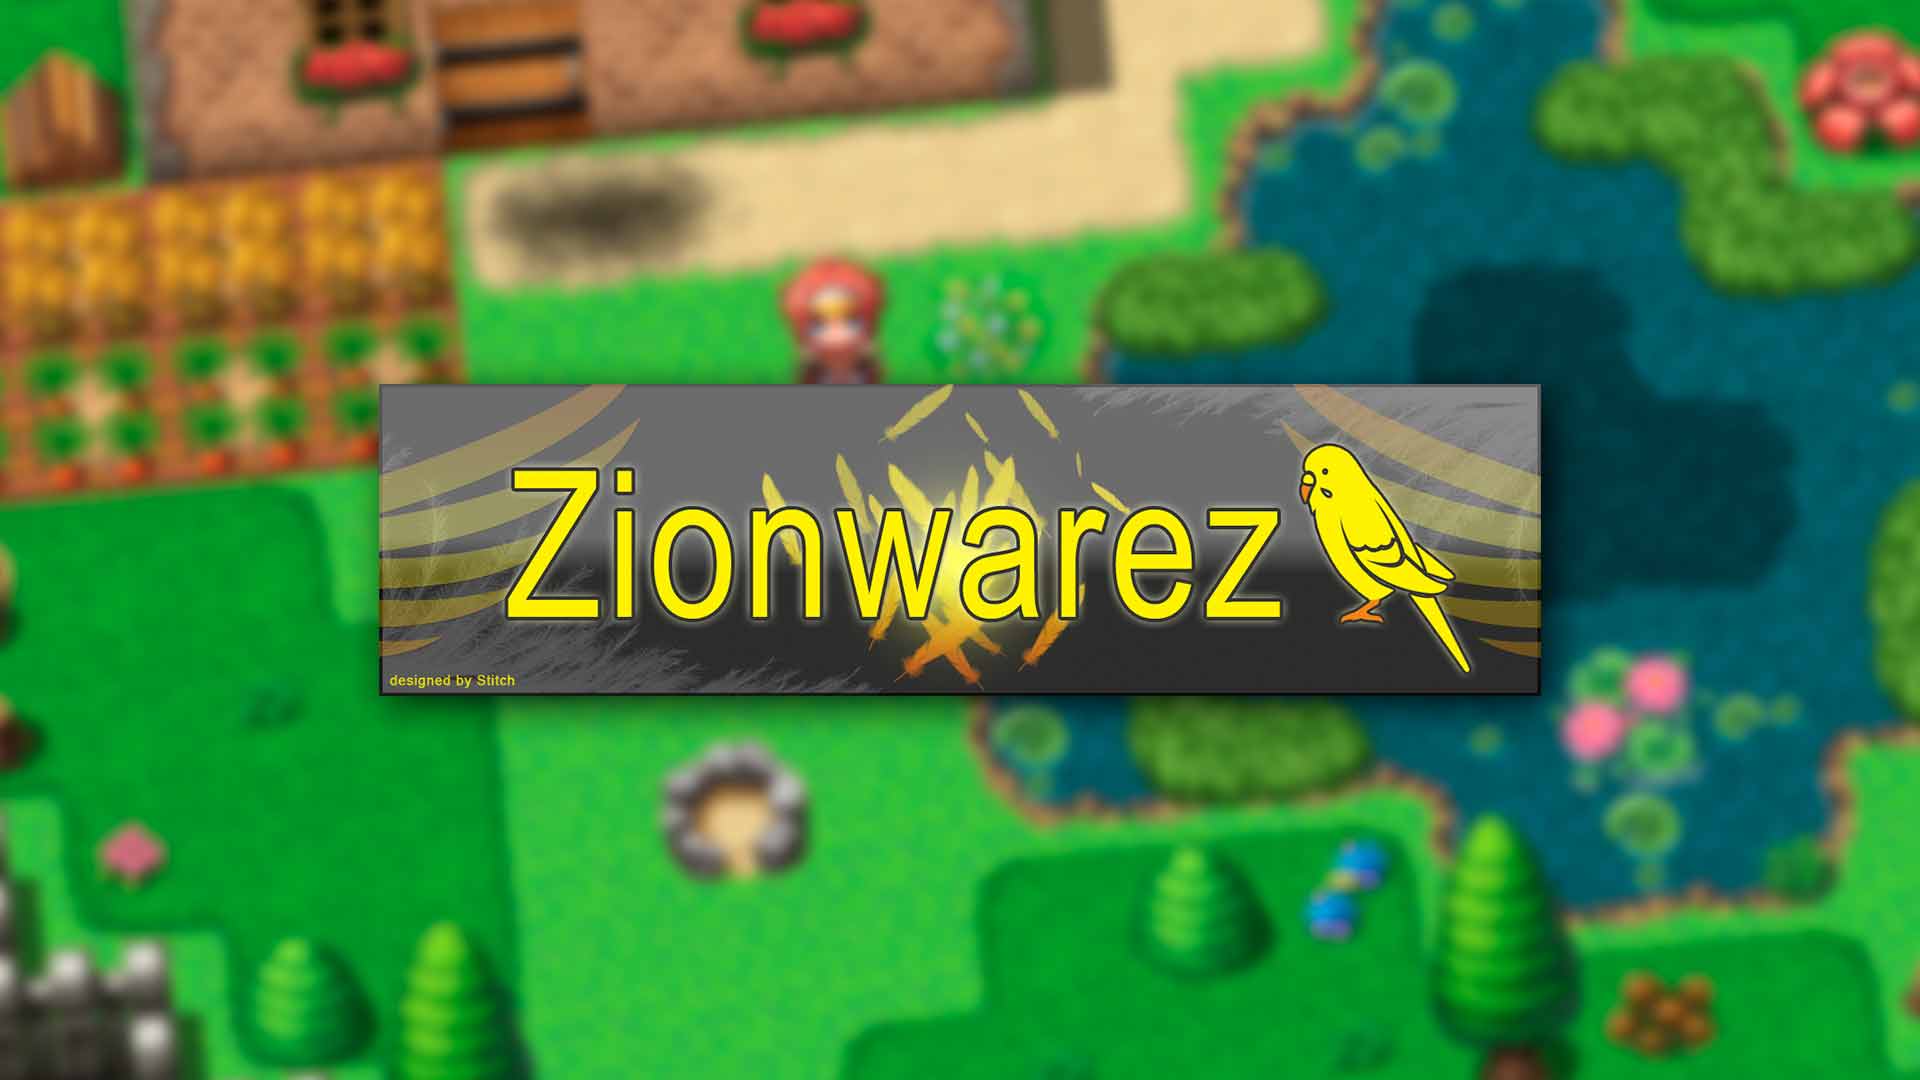 Zionwarez